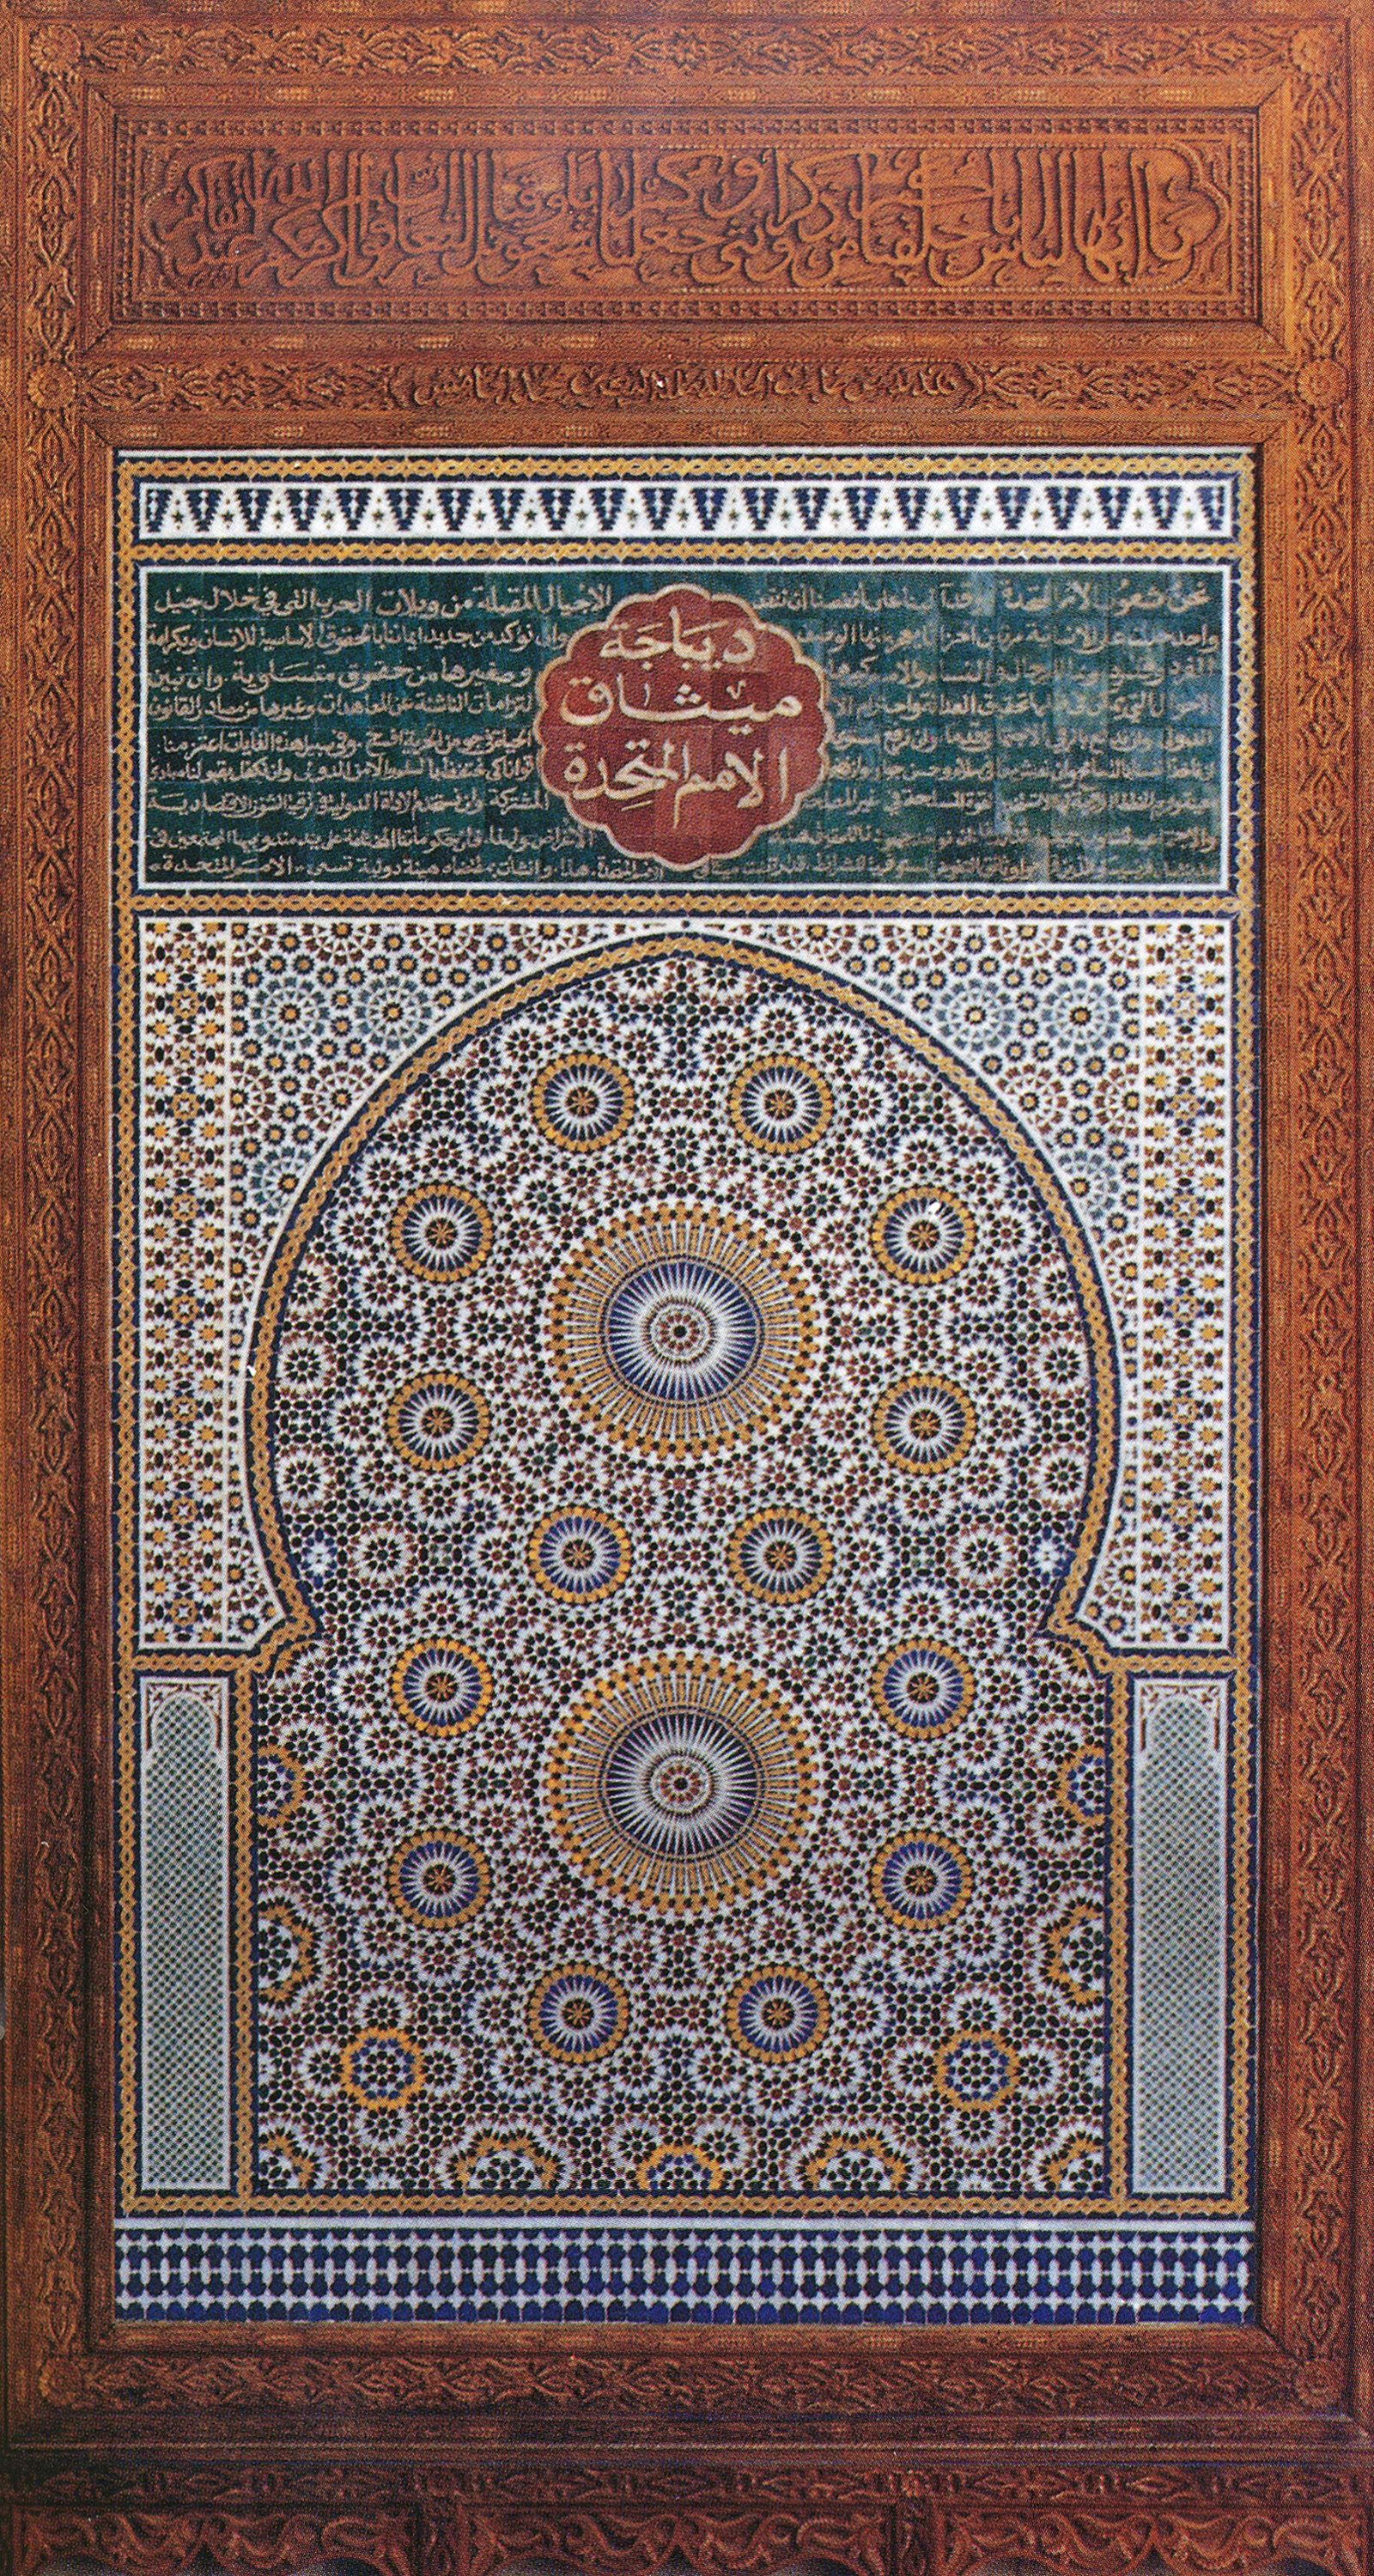 Panneau en mosaïque, UNNY105G, 1963, Maroc